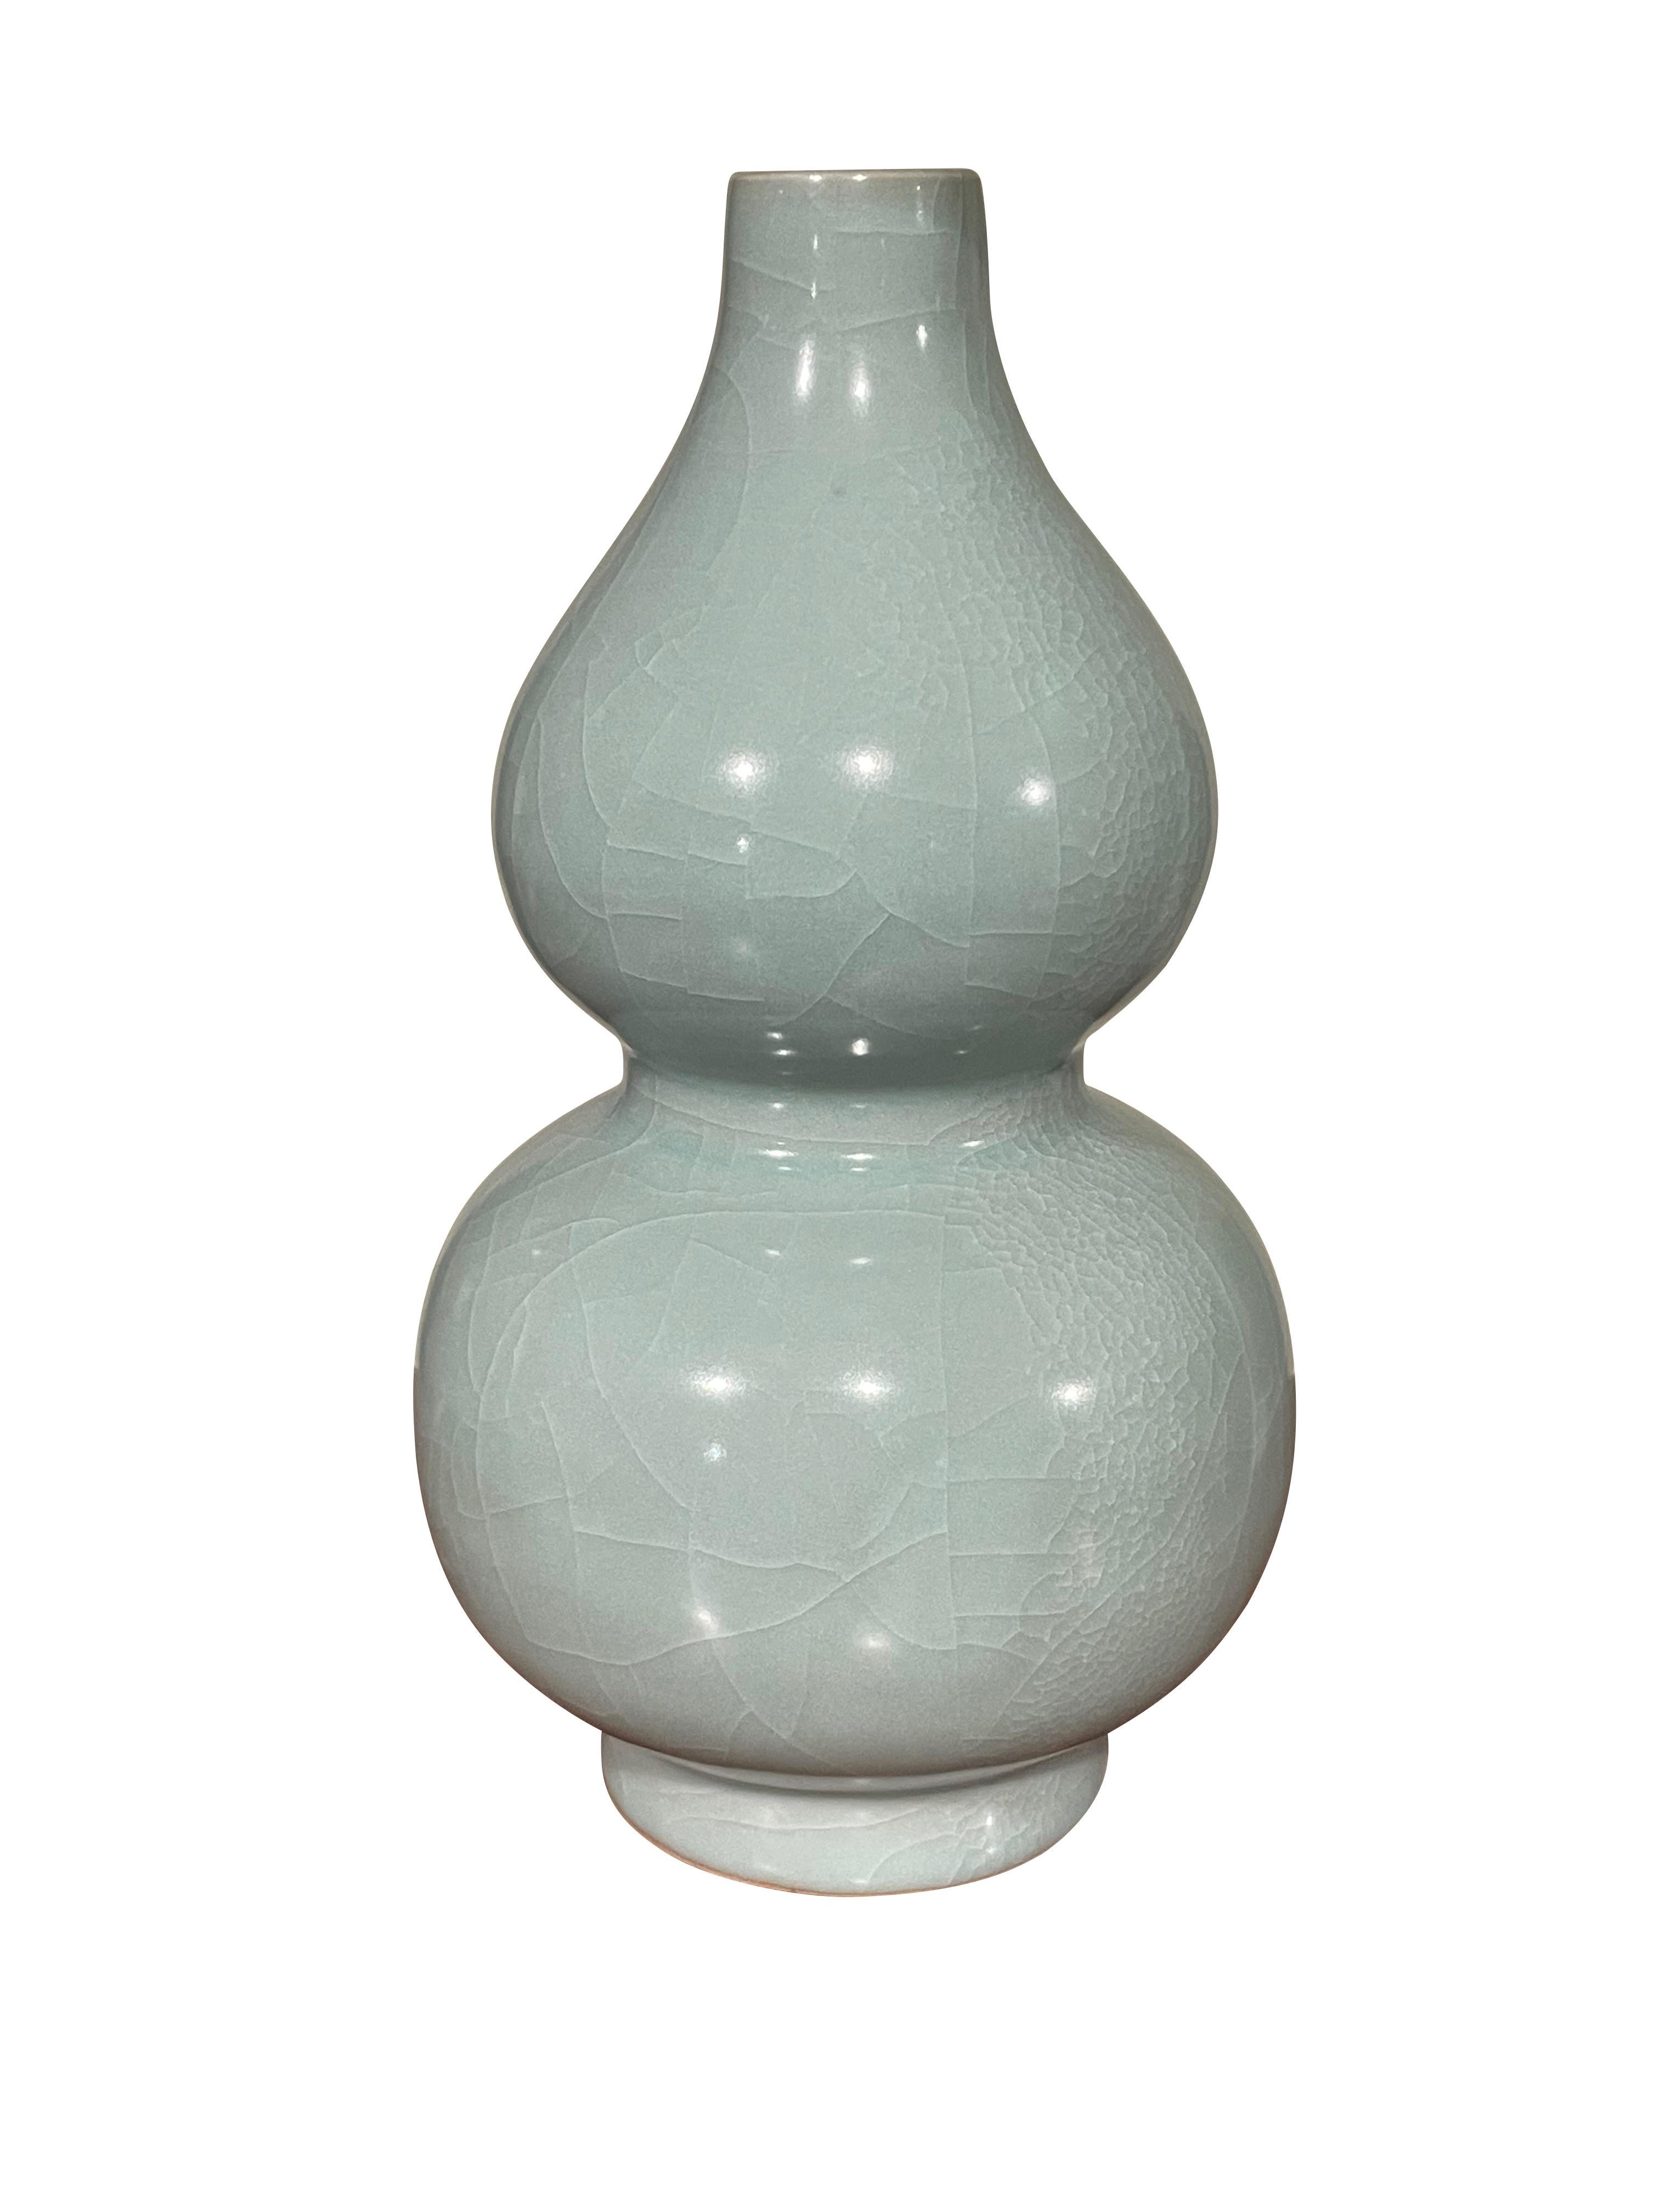 Collection S Contemporary de vases turquoise pâle.
Une large collection est disponible avec des tailles et des formes variées.
Chaque vase fait partie de la collection et est vendu individuellement.
Le diamètre varie de 4 à 6 pouces
Hauteur comprise